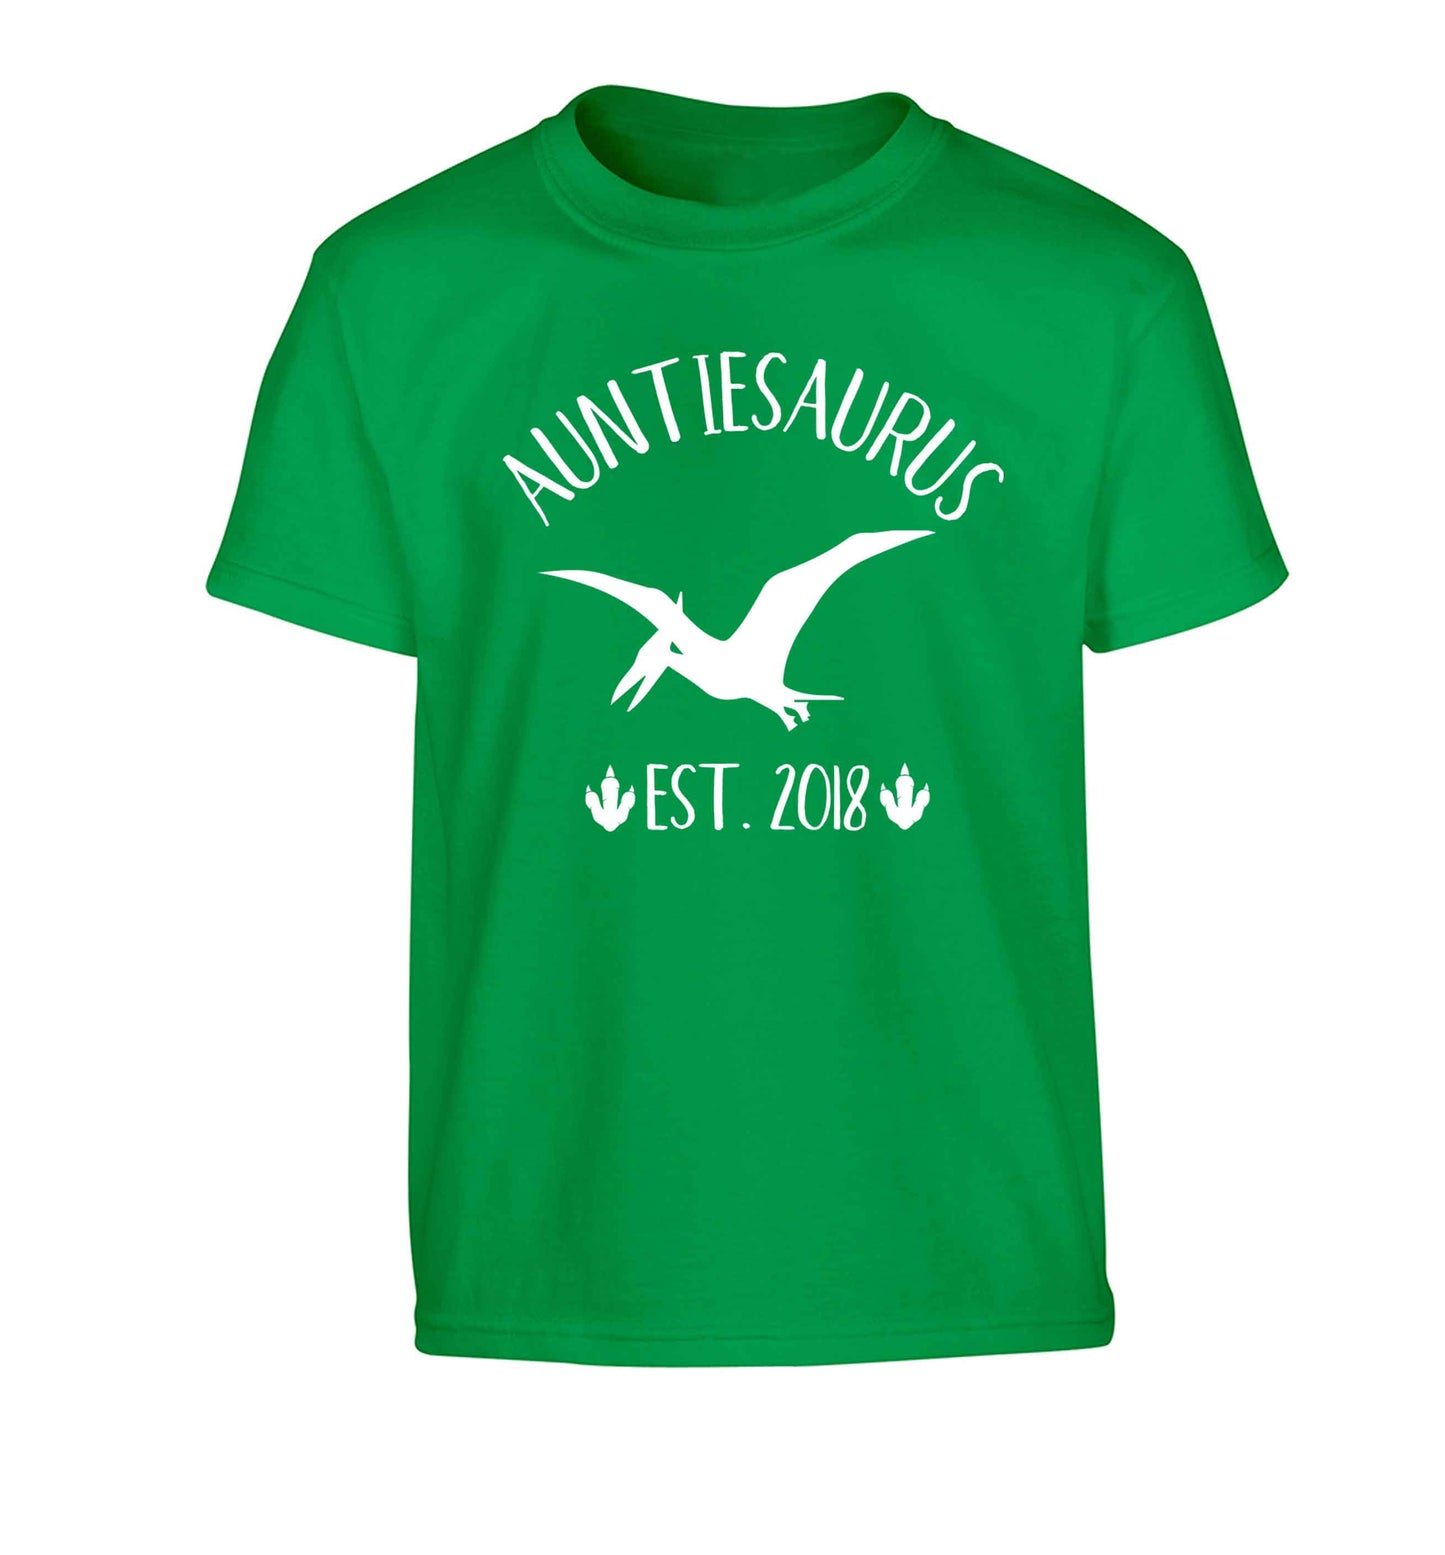 Personalised auntiesaurus since (custom date) Children's green Tshirt 12-13 Years